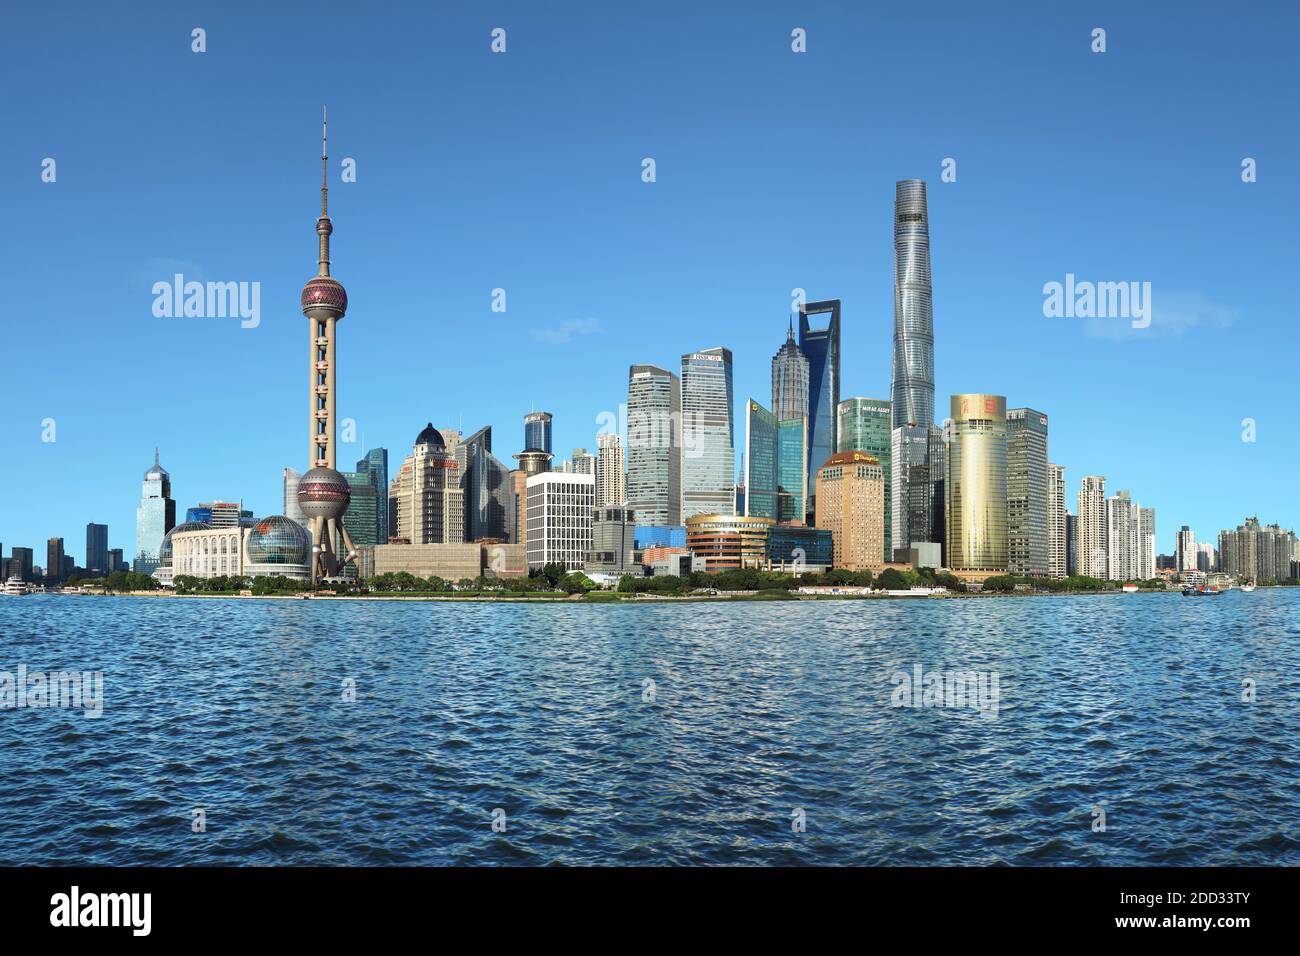 Shanghai bund scenery Stock Photo